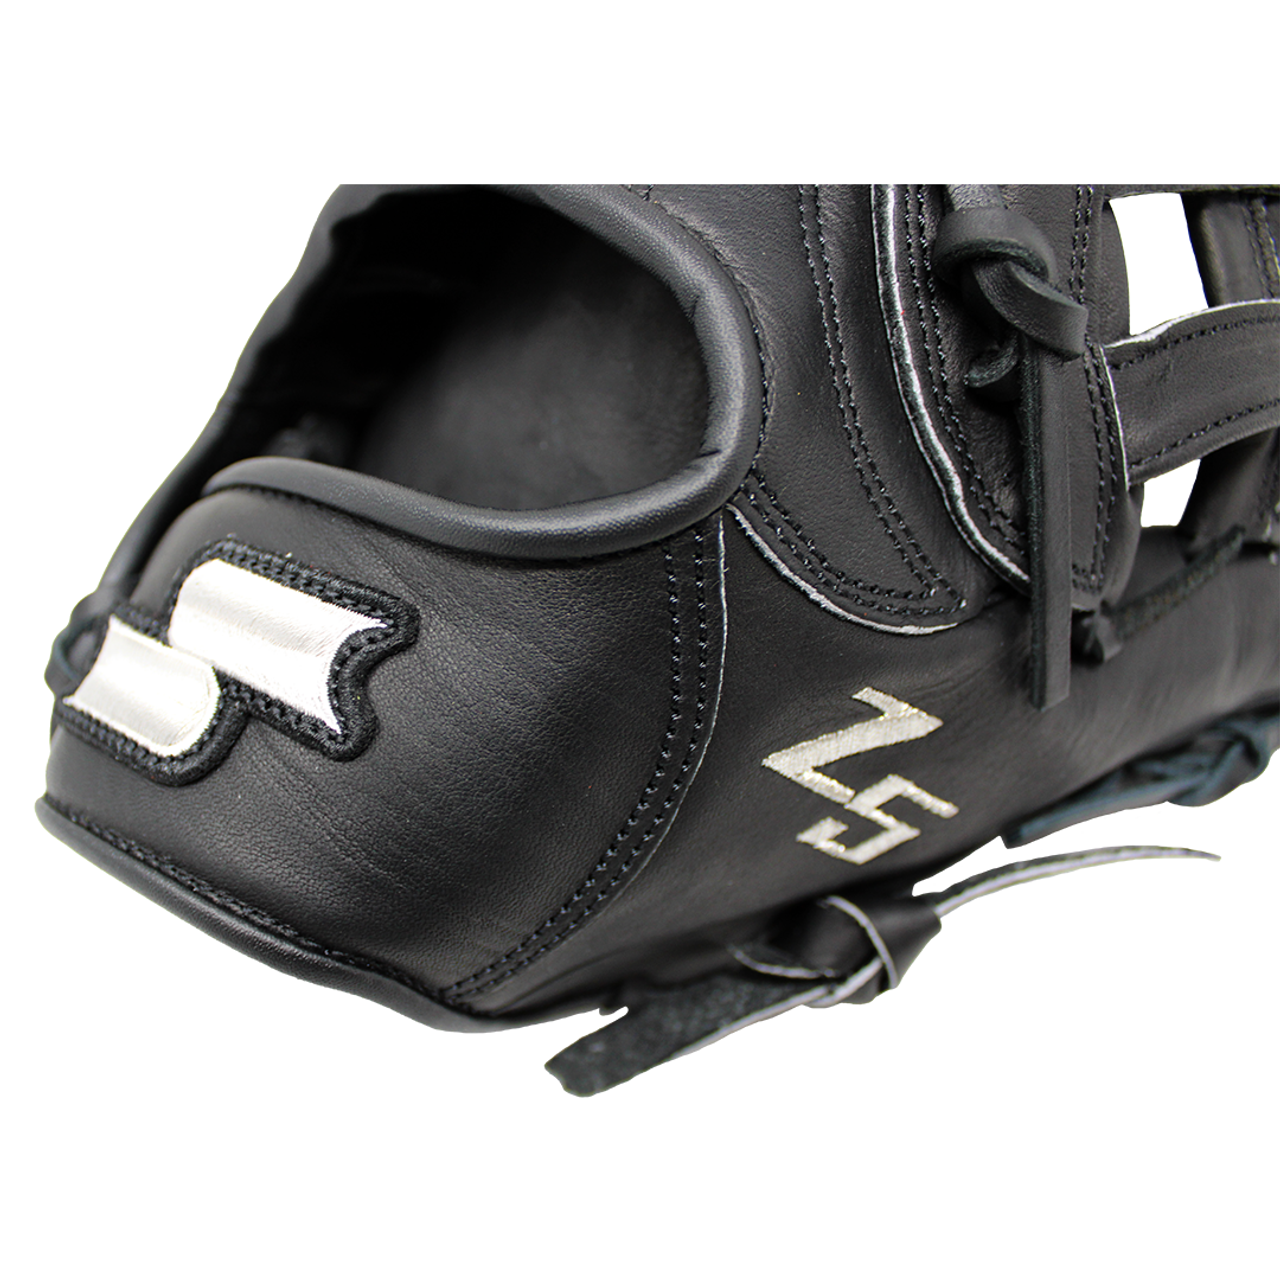 SSK Z5 Craftsman 12.5 Outfield Baseball Glove Z5-1250CMLBLK3